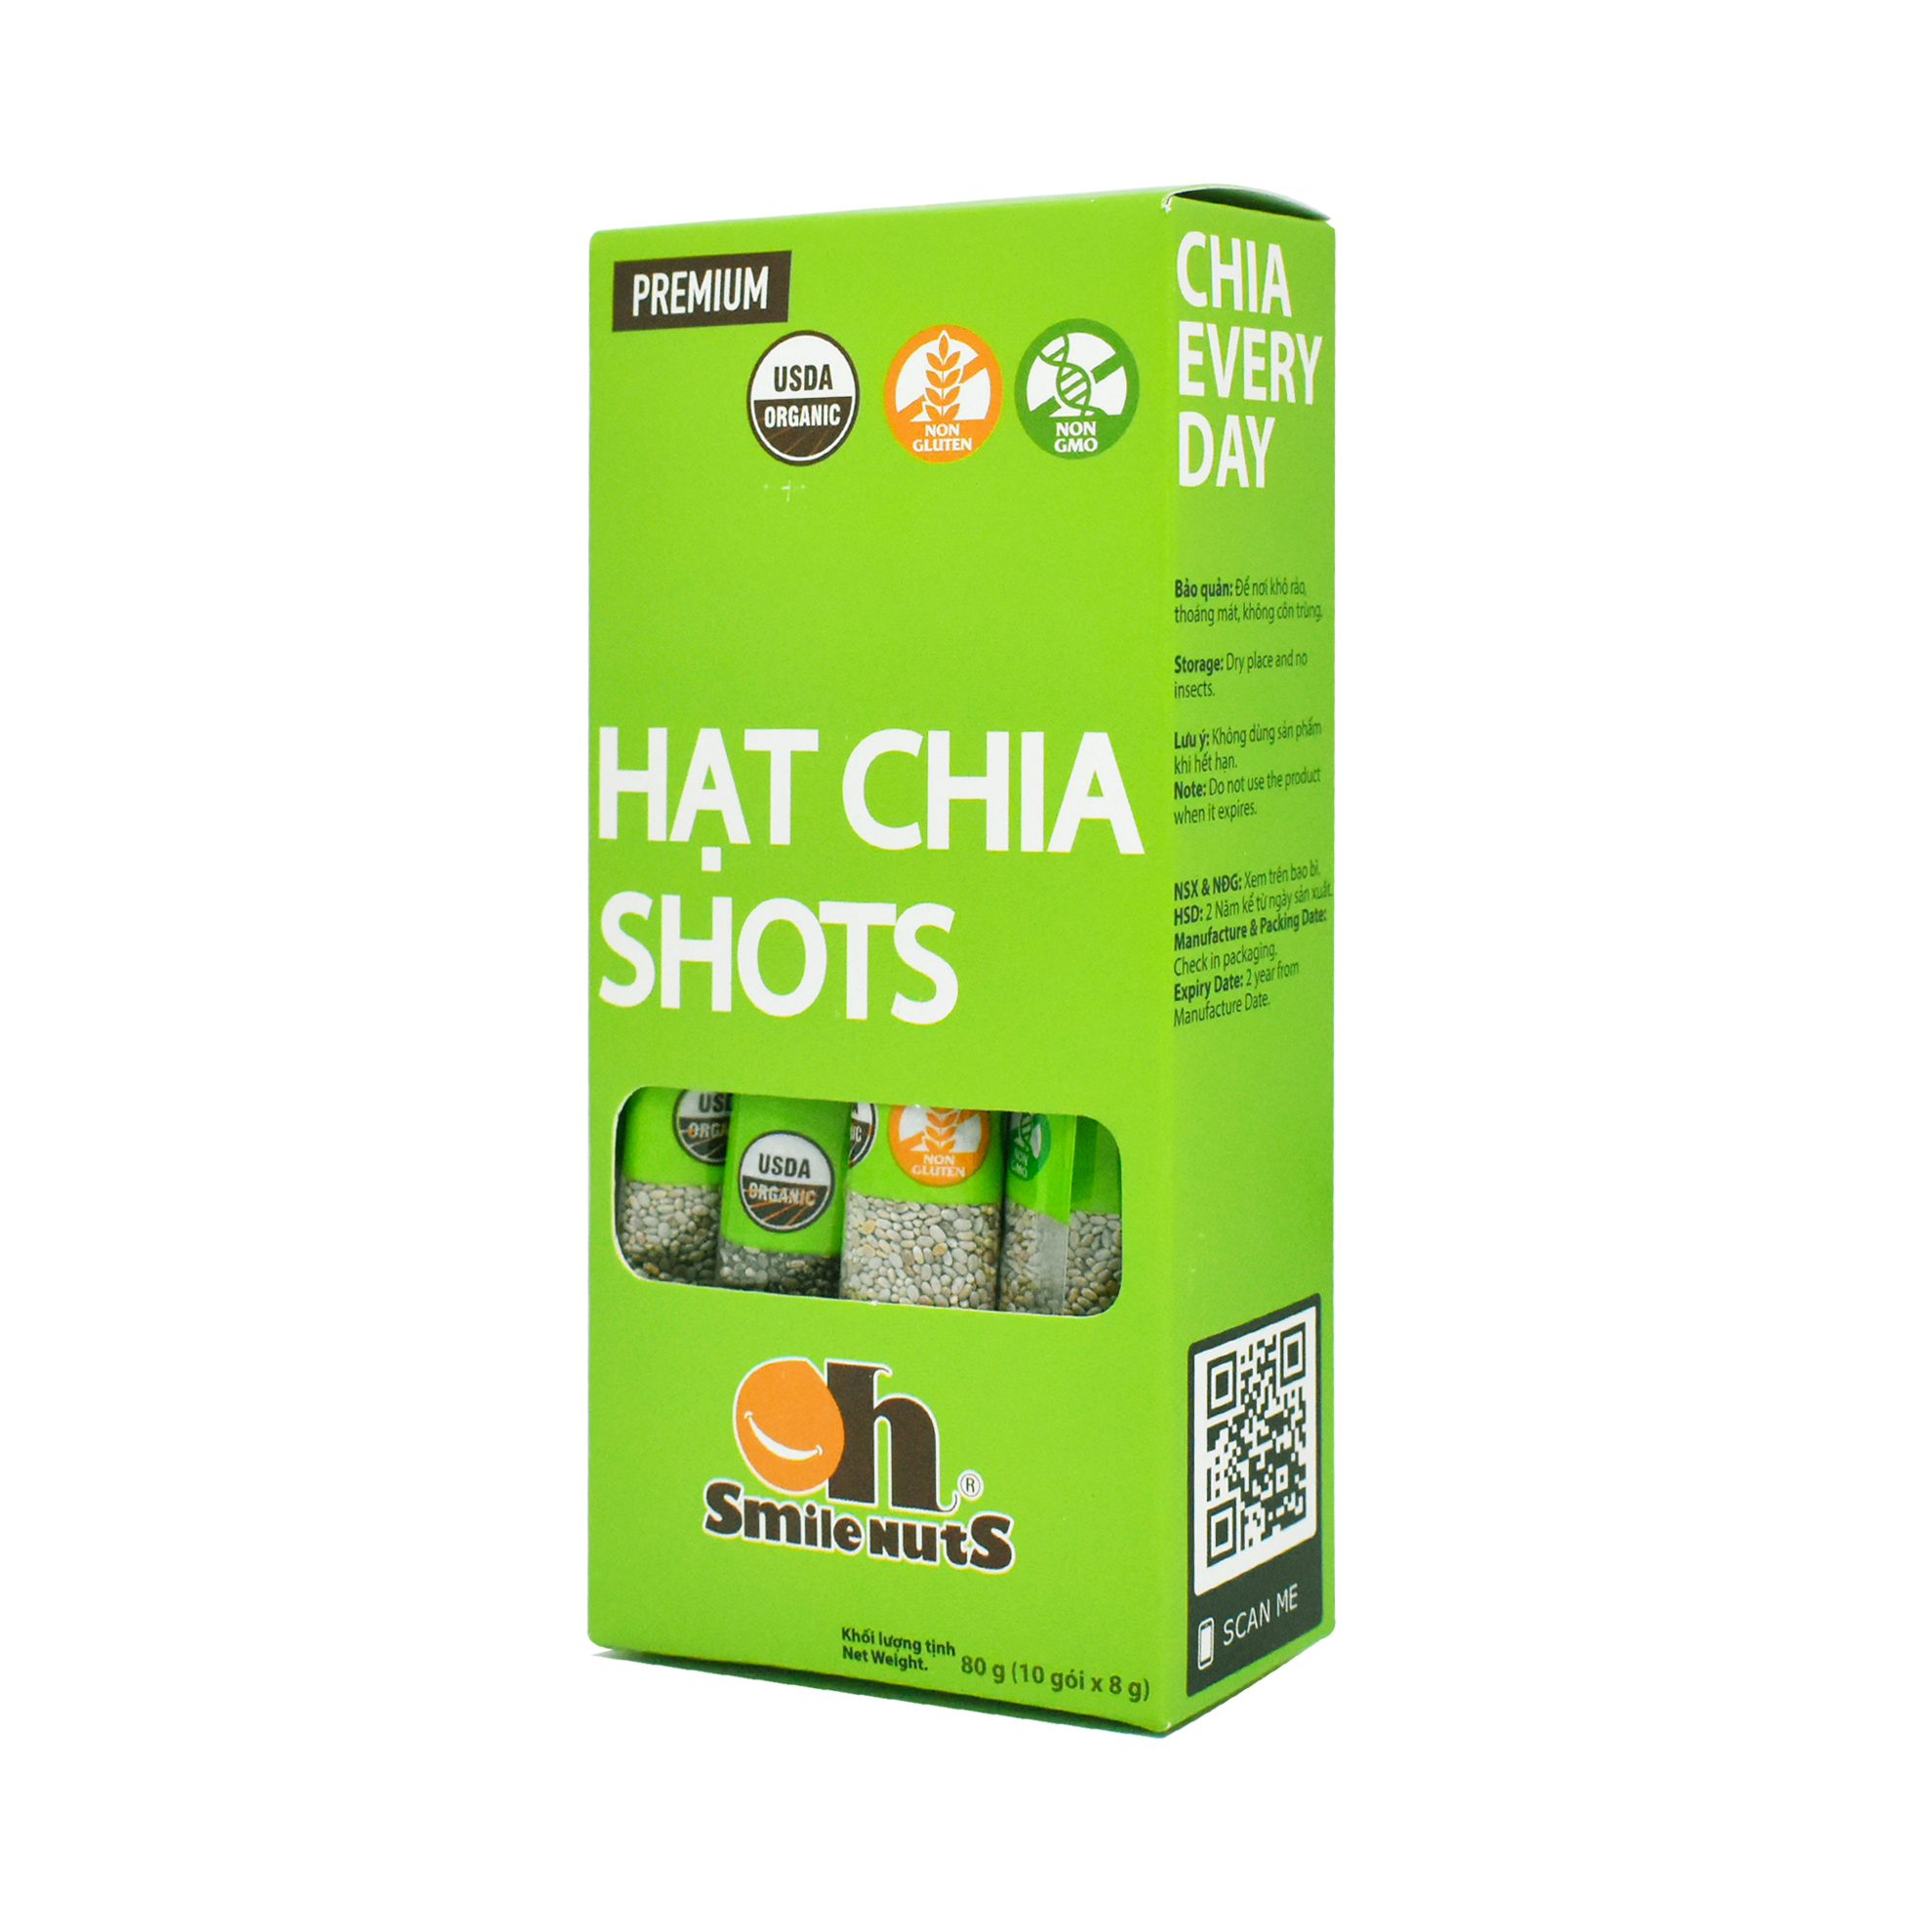 Hạt Chia Shots hữu cơ Smile Nuts gói nhỏ tiện dụng (8g x 10 gói) - Organic Chia Seed Shots (8g x 10 bag) 